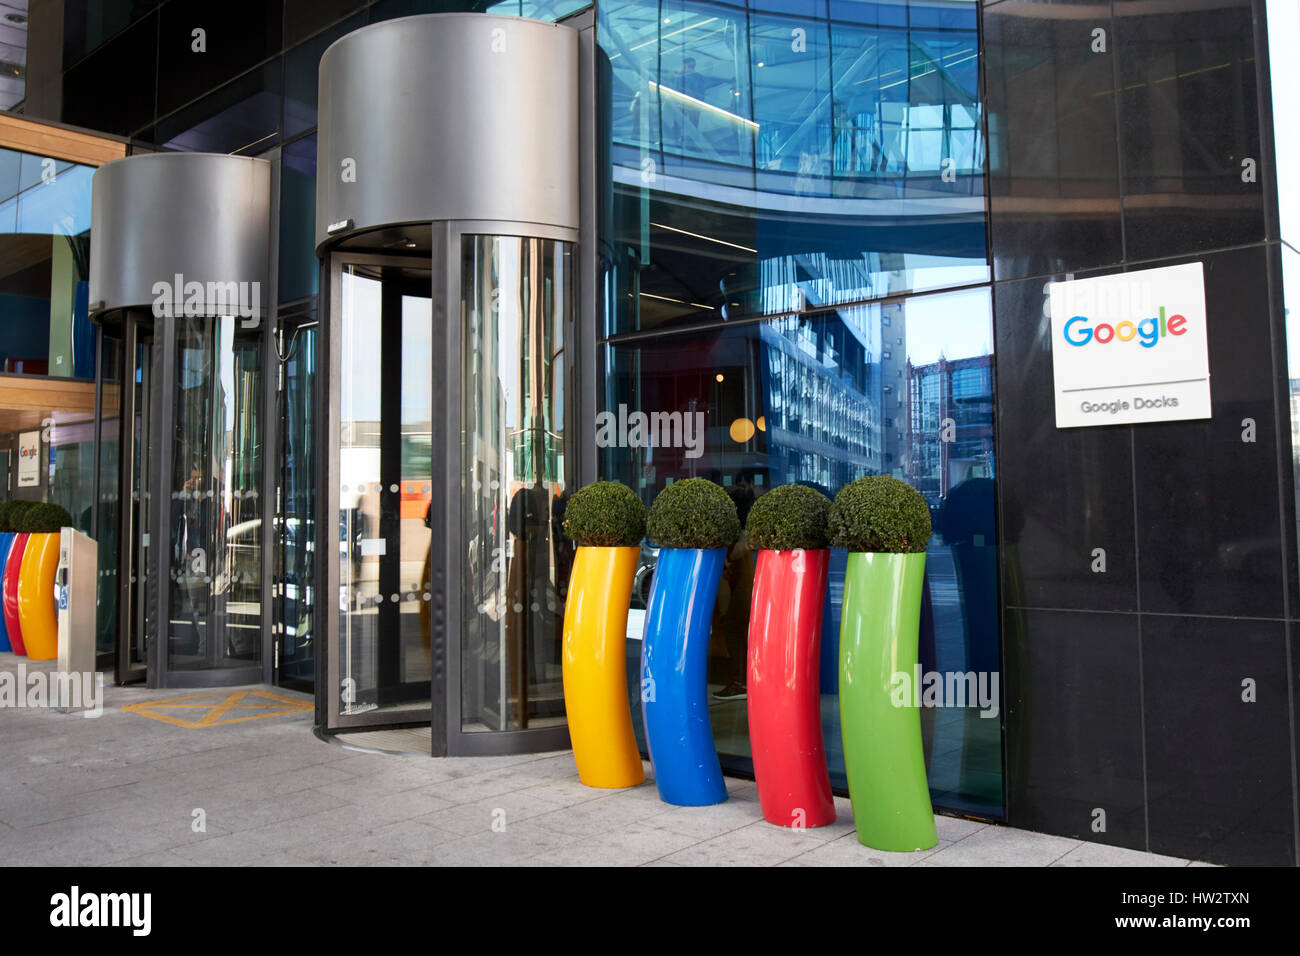 Google docks edificio montevetro Dublín, República de Irlanda Foto de stock